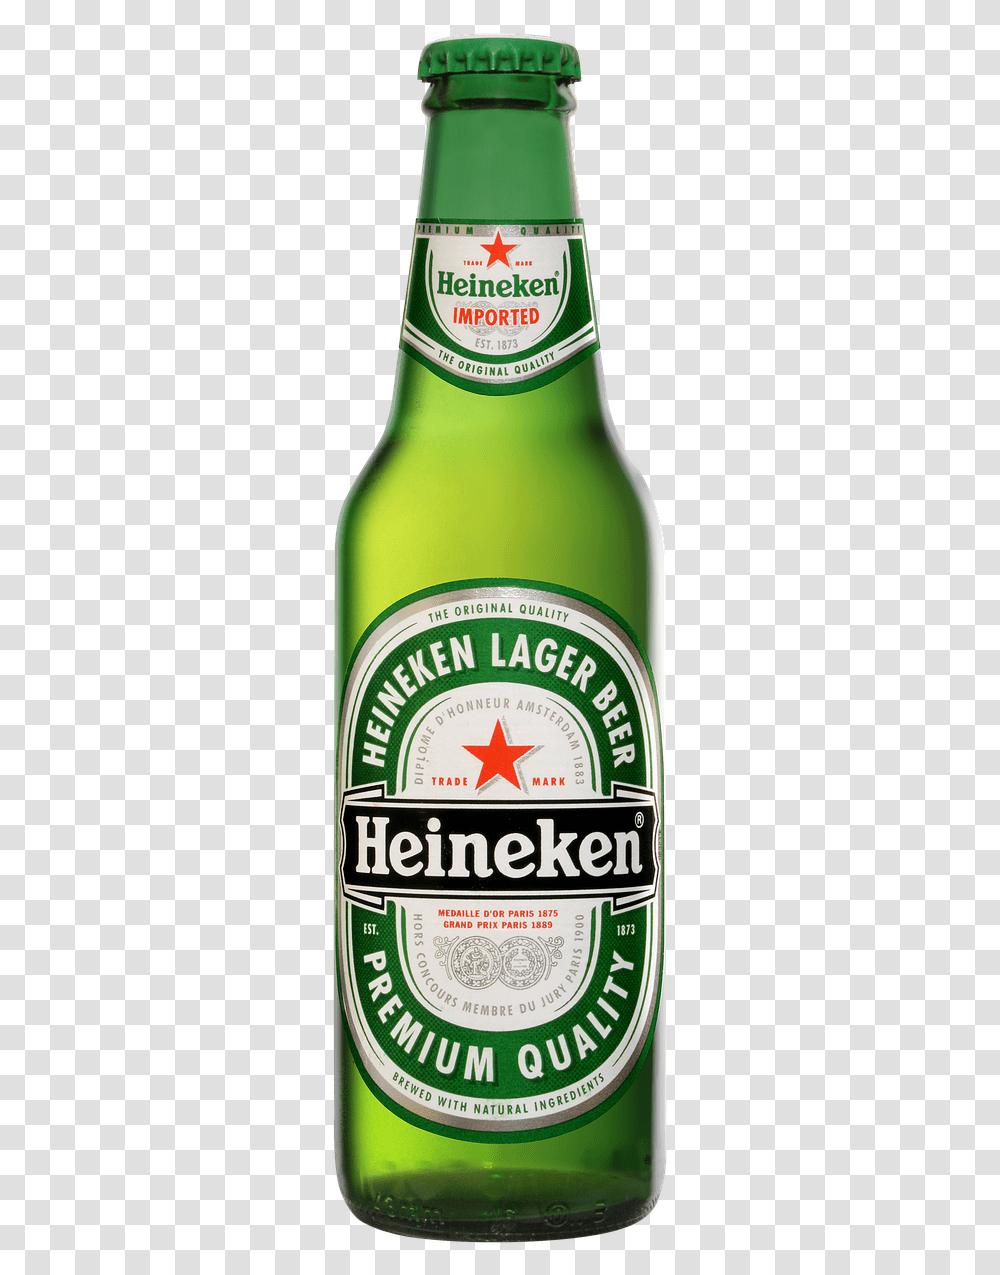 Beer Bottle Heineken2 Free Photo Beer Bottle, Liquor, Alcohol, Beverage, Drink Transparent Png